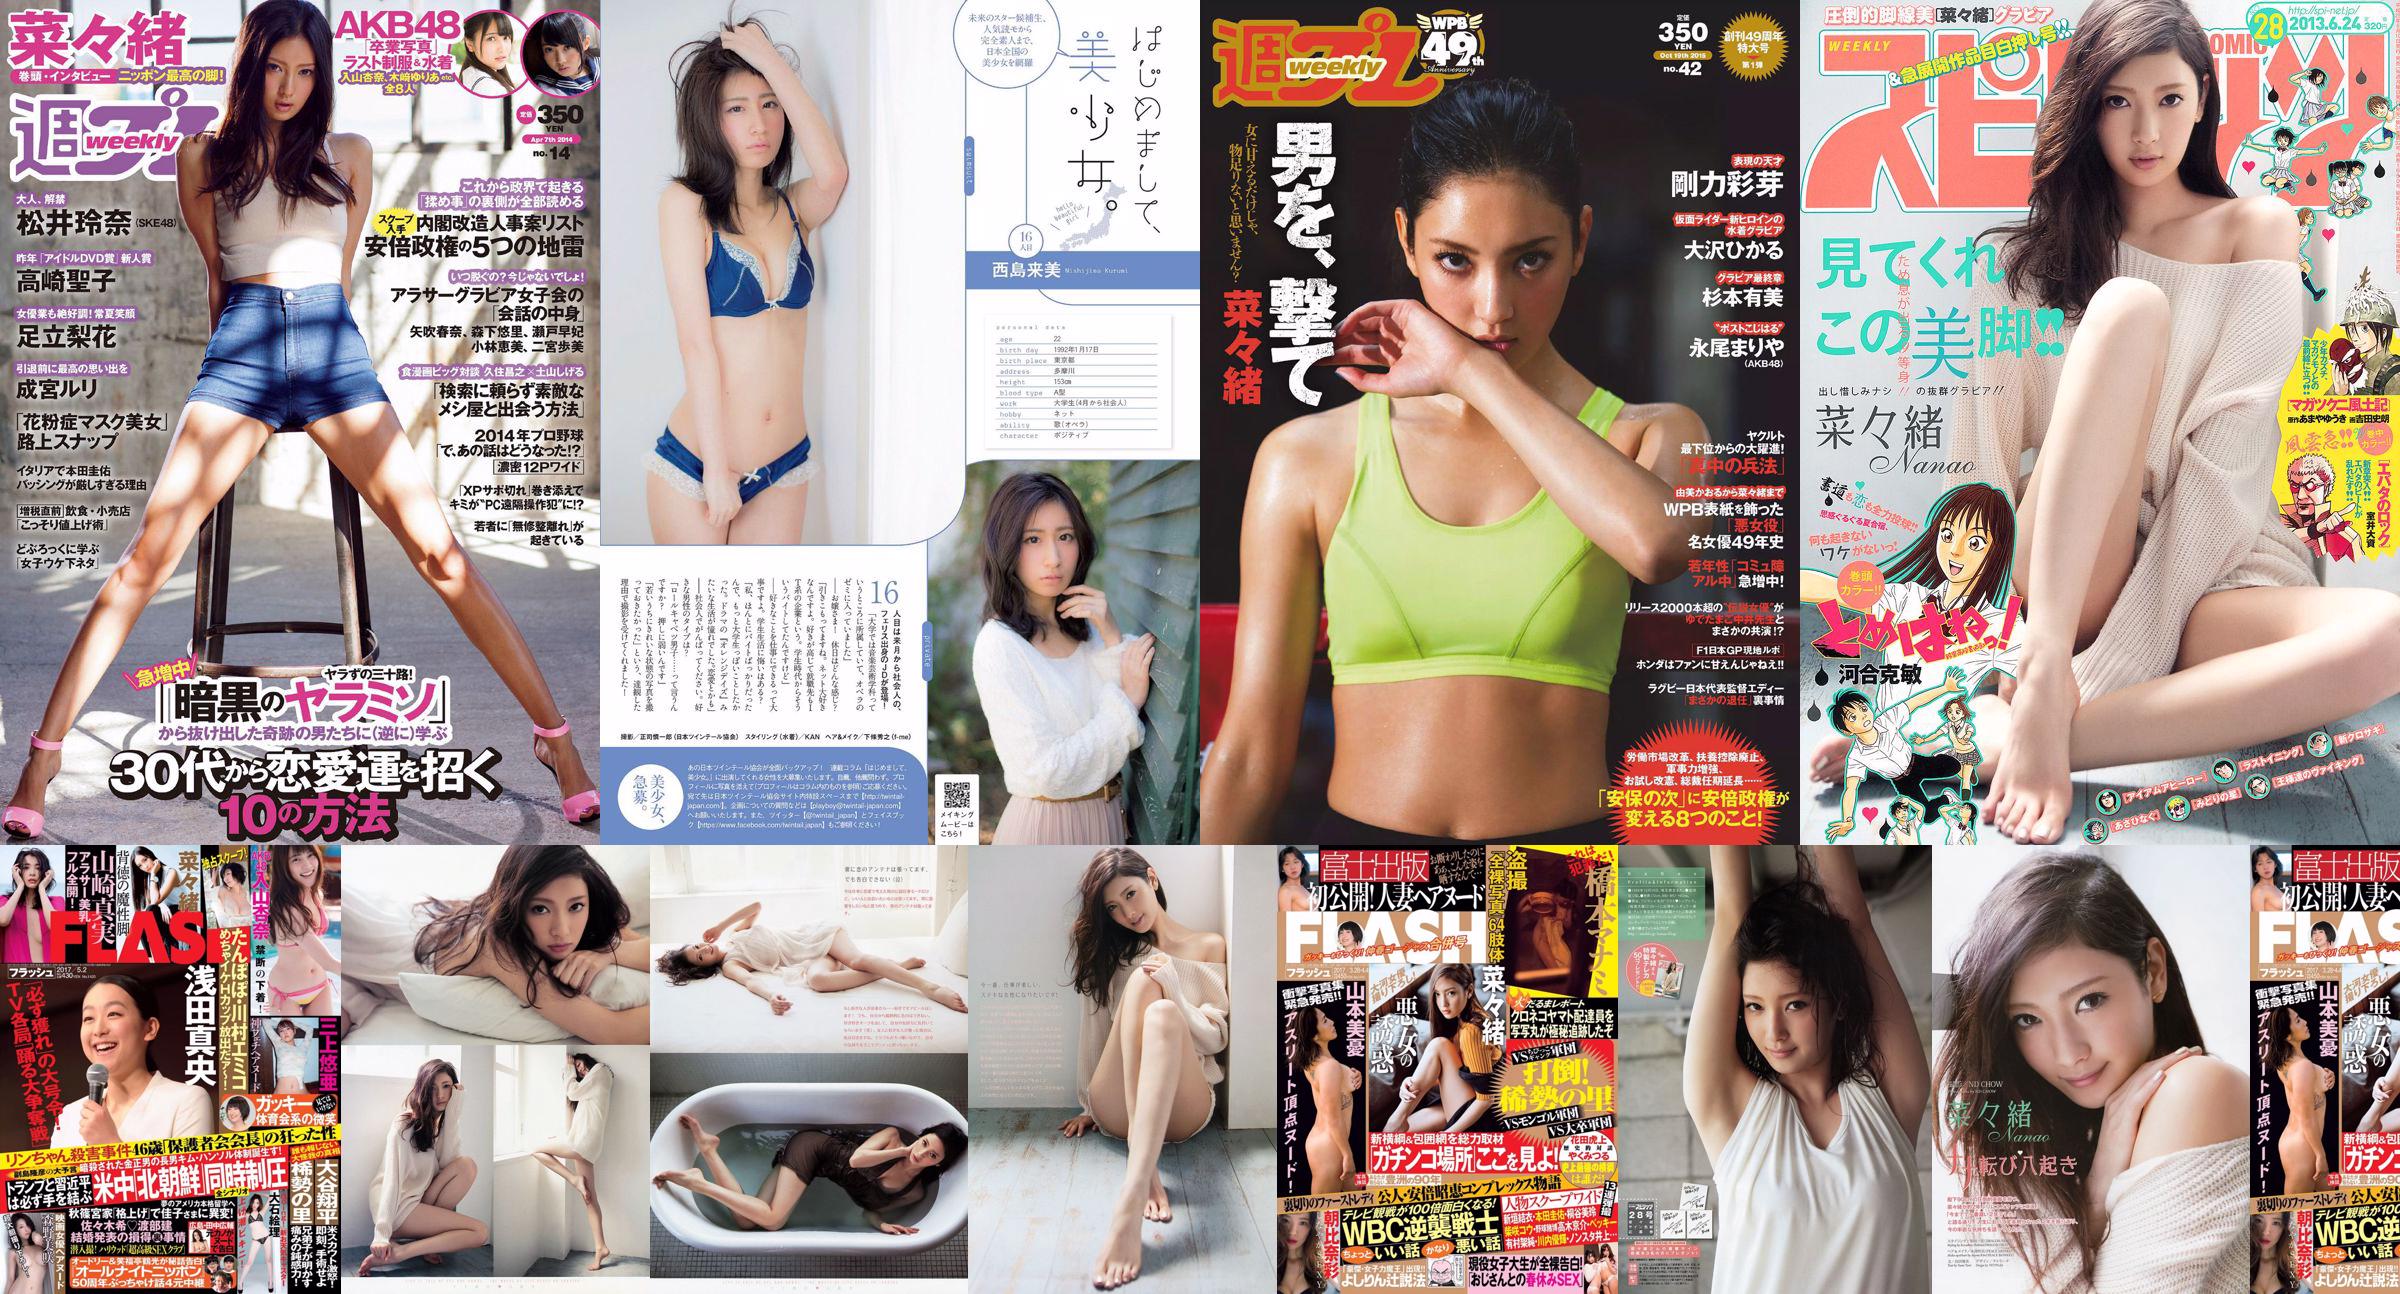 Nanao Yumi Sugimoto Hikaru Ohsawa Ayame Goriki Riona Nagao Mariya Nagao [Playboy Semanal] 2015 Fotografia No.42 No.a6d00d Página 1